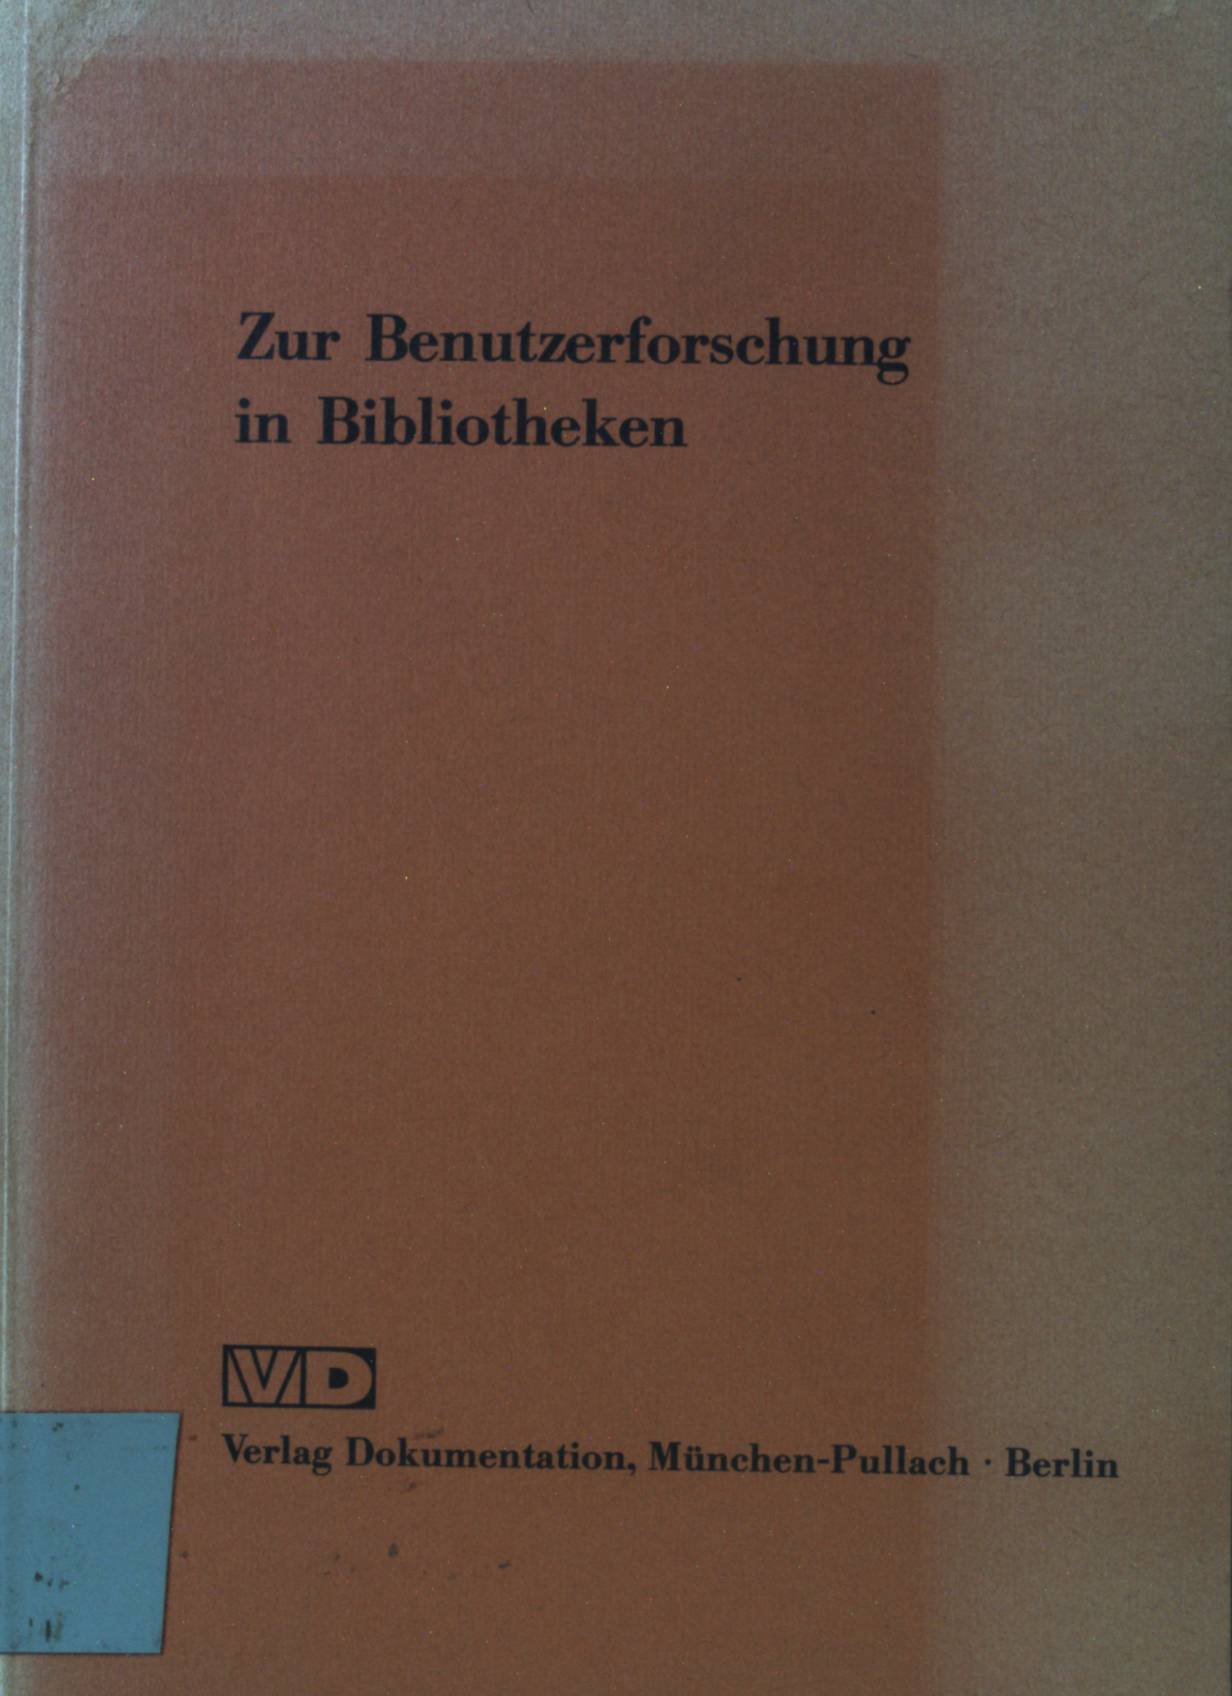 Zur Benutzerforschung in Bibliotheken : die Situation in d. Bundesrepublik Deutschland; ein Reader. - Bock, Gunter